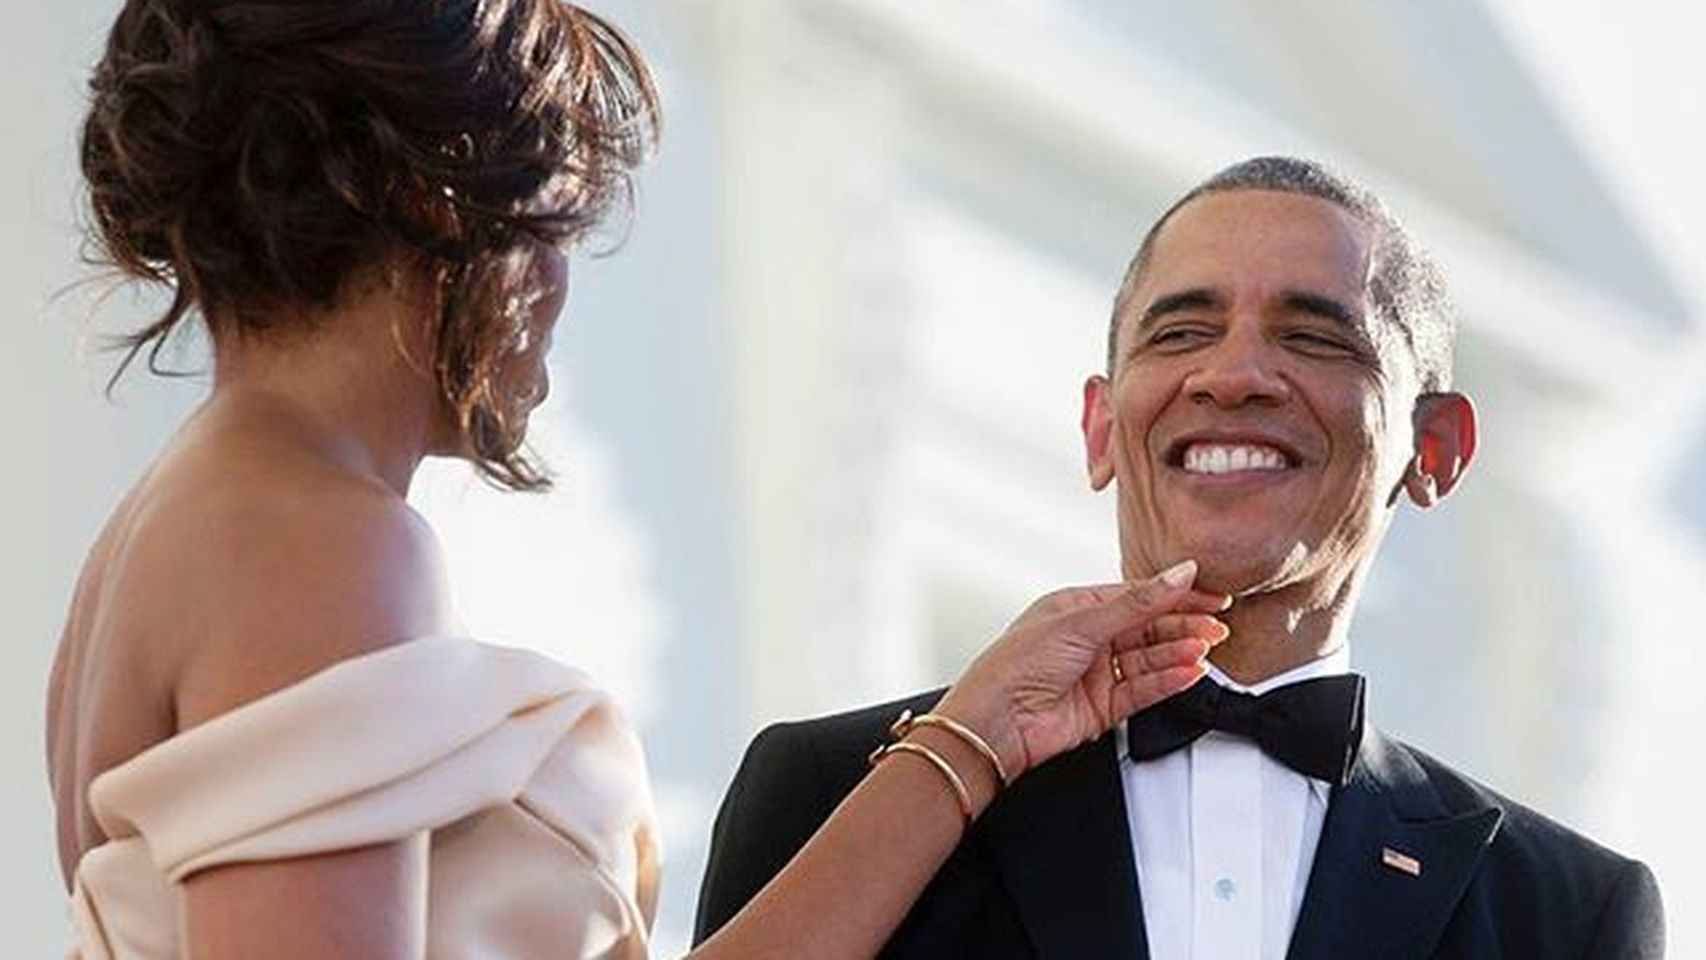 Michelle hace un gesto cariñoso a su marido Barack Obama